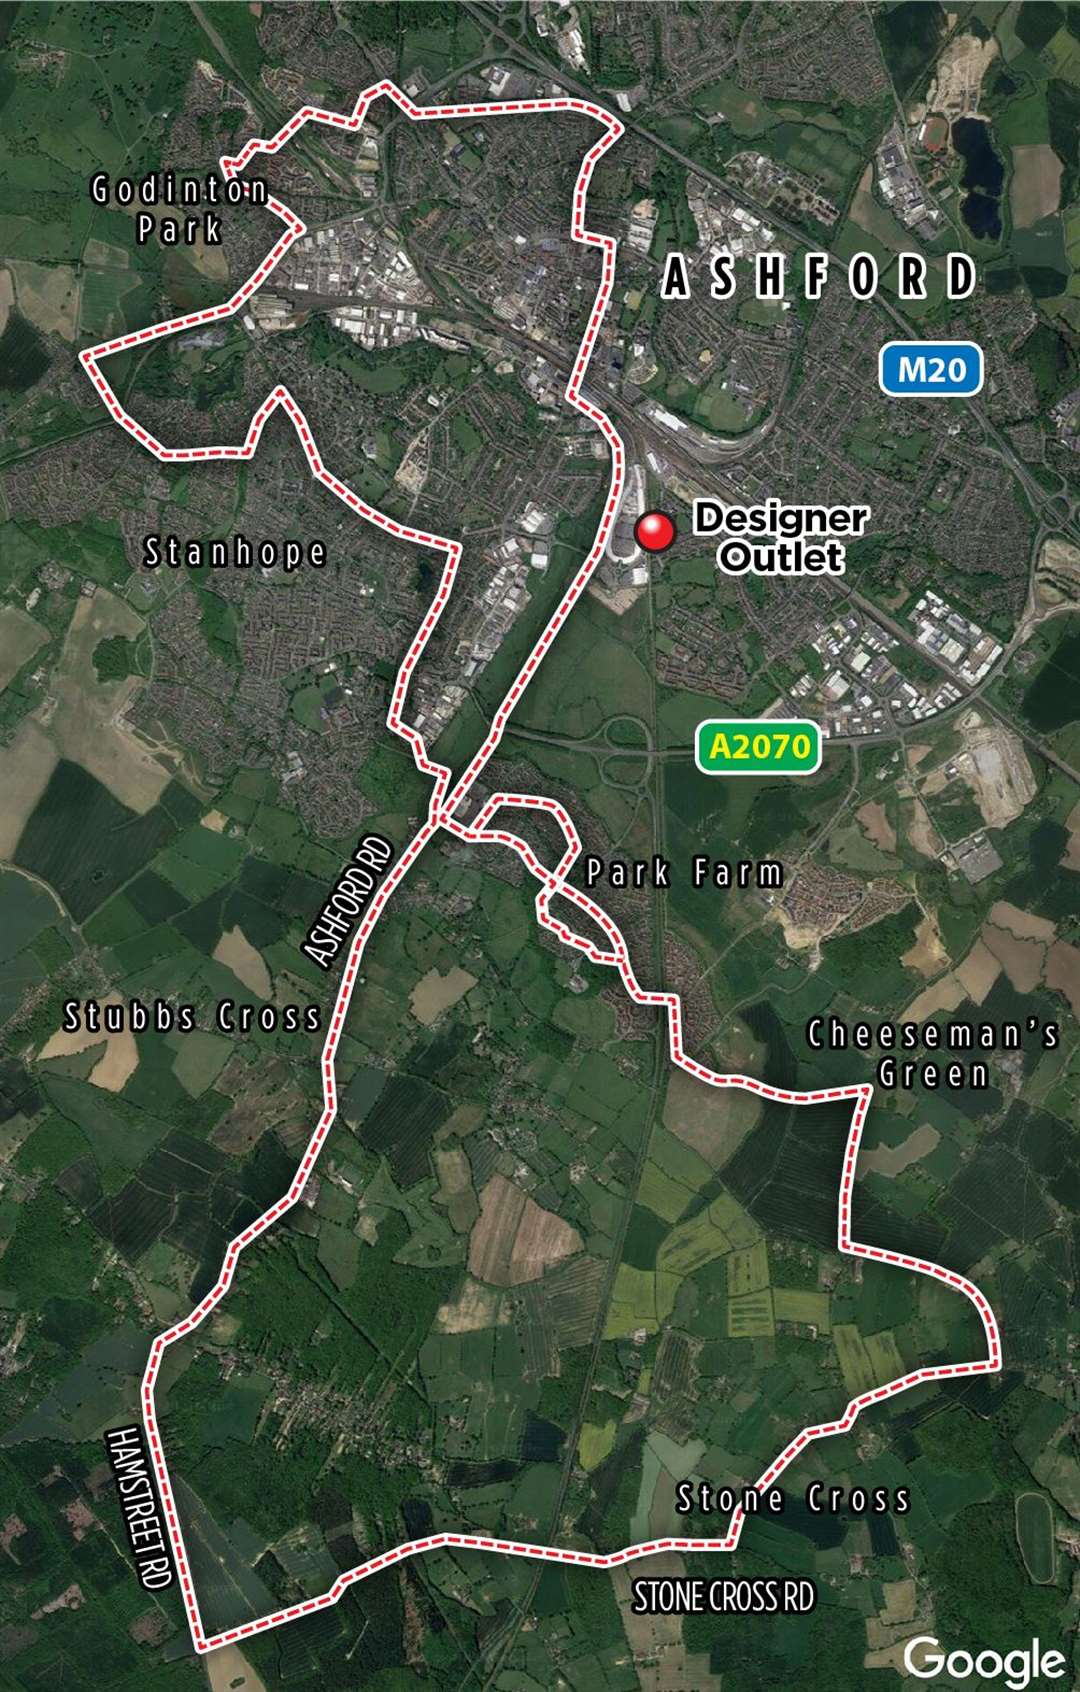 The marathon route that Chris took around Ashford